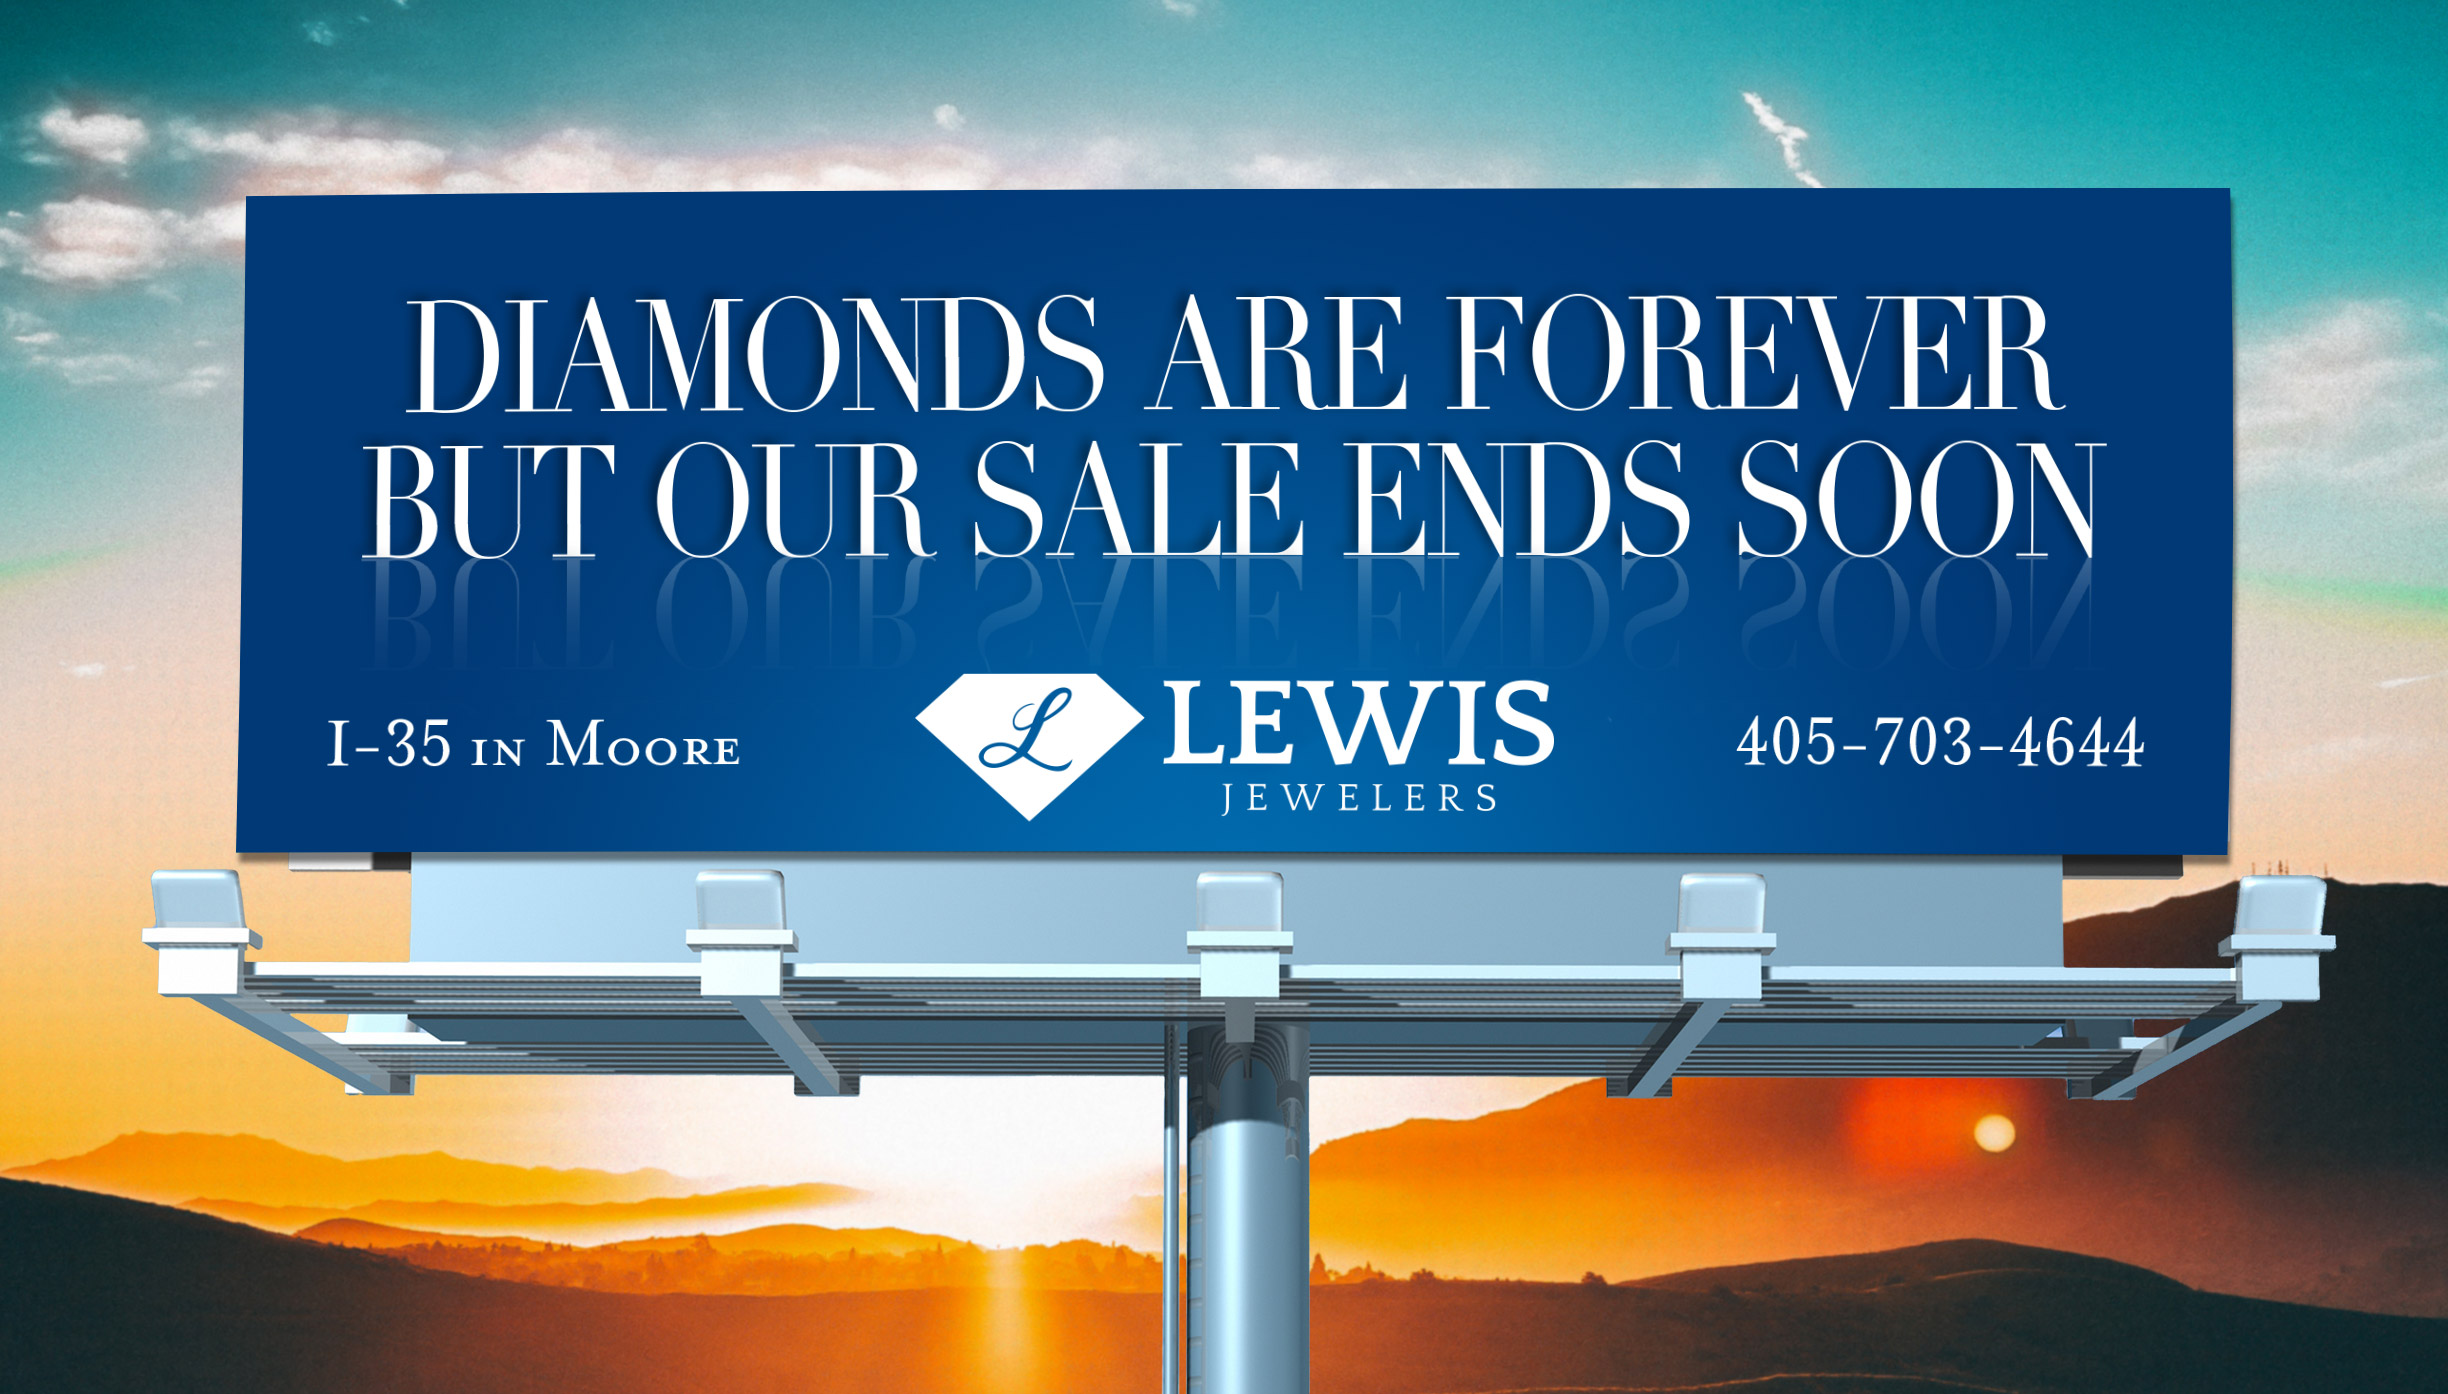 Lewis-Jewelers-Outdoor-Boards-SaleEndsSoon.jpg